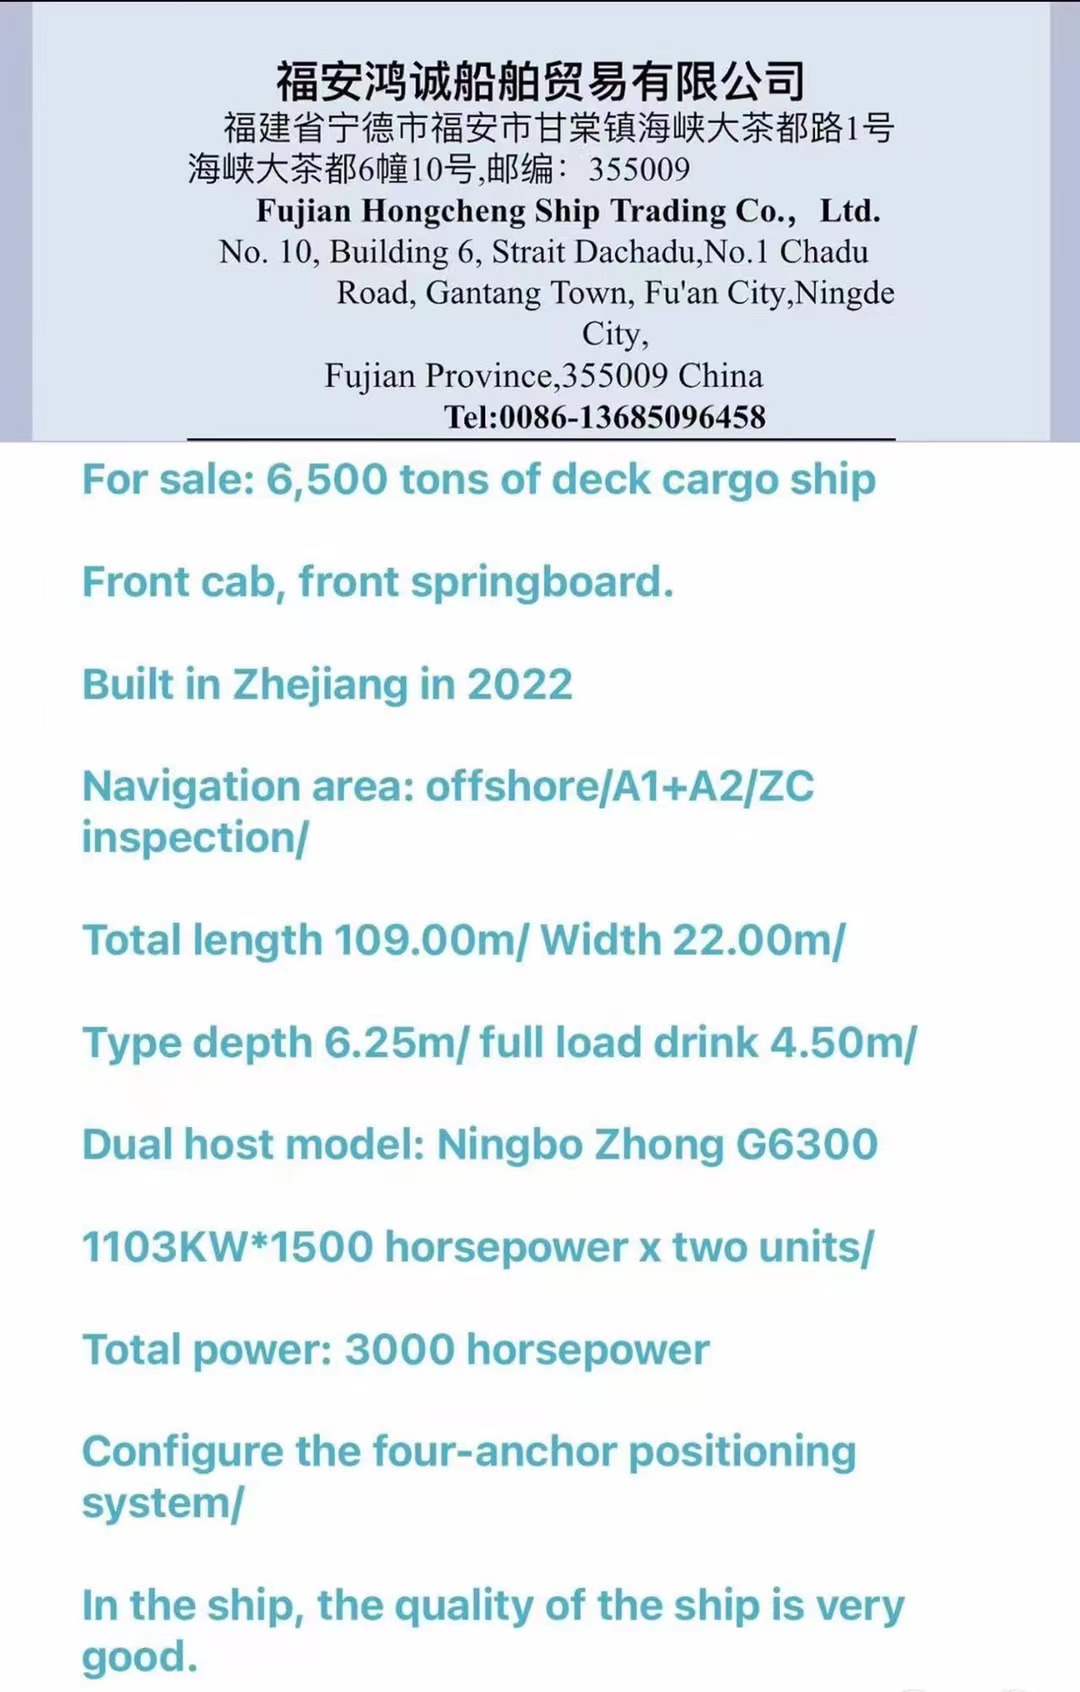 出售：6500吨甲板货船 前驾驶室、前跳板。 2022年浙江建造